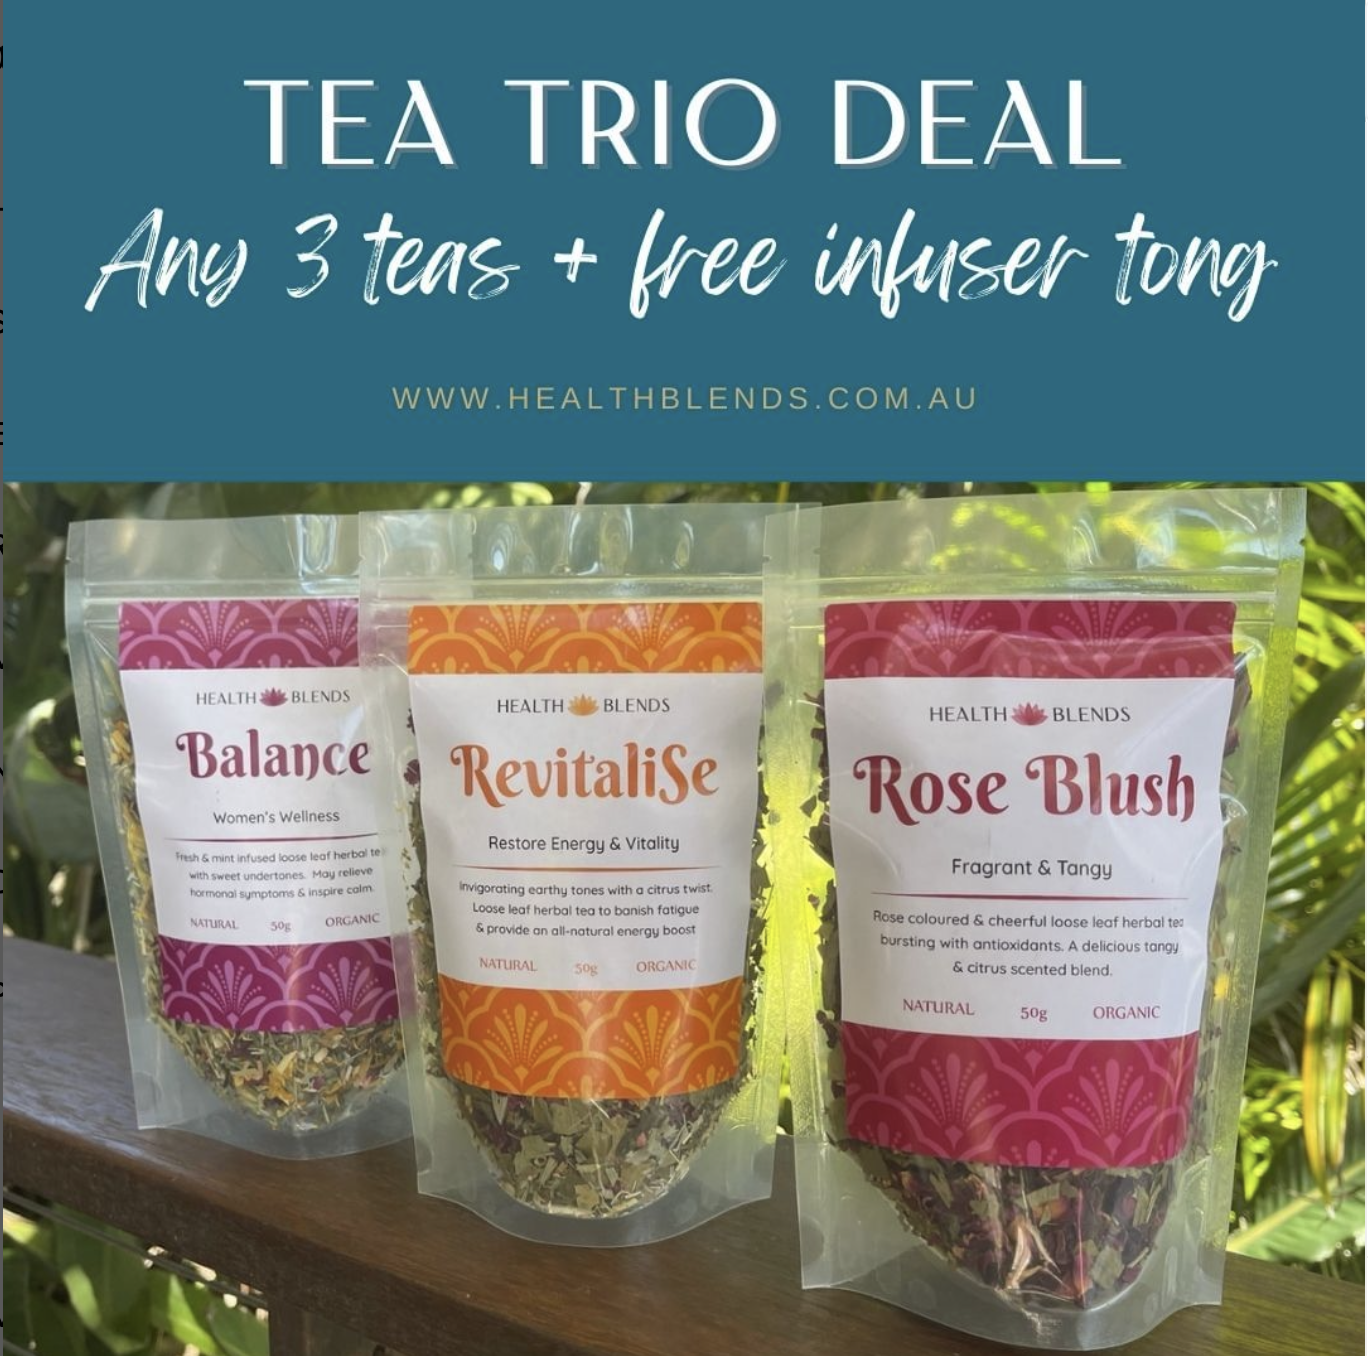 Health Blends teas- "Tea Trio Deal"